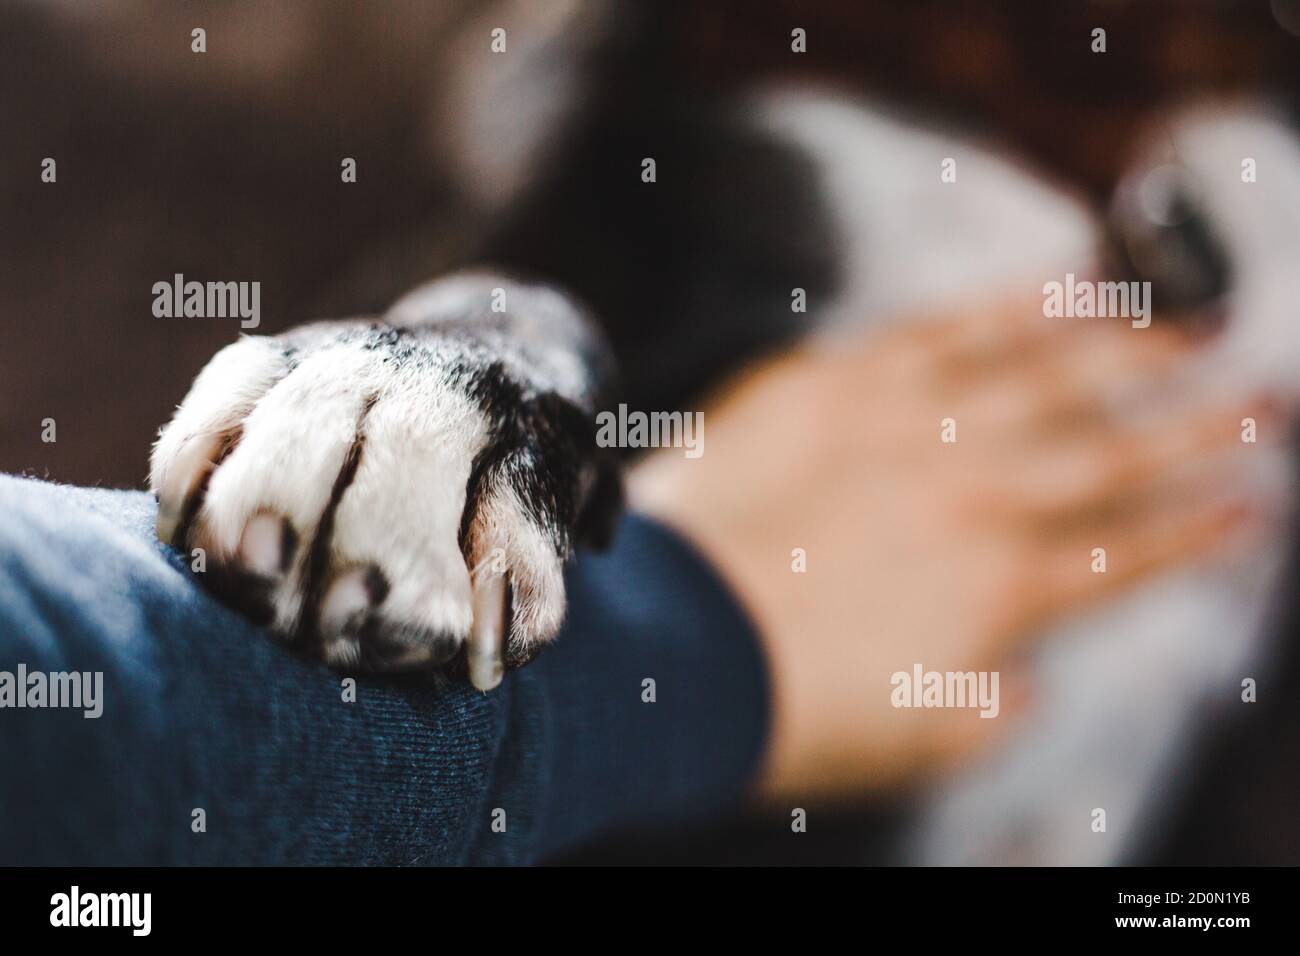 Cuidando Staffordshire toro terrier perro de raza bully lugares lovingly su pata blanca en el brazo del ser humano mientras recibe un arbusto del vientre Foto de stock